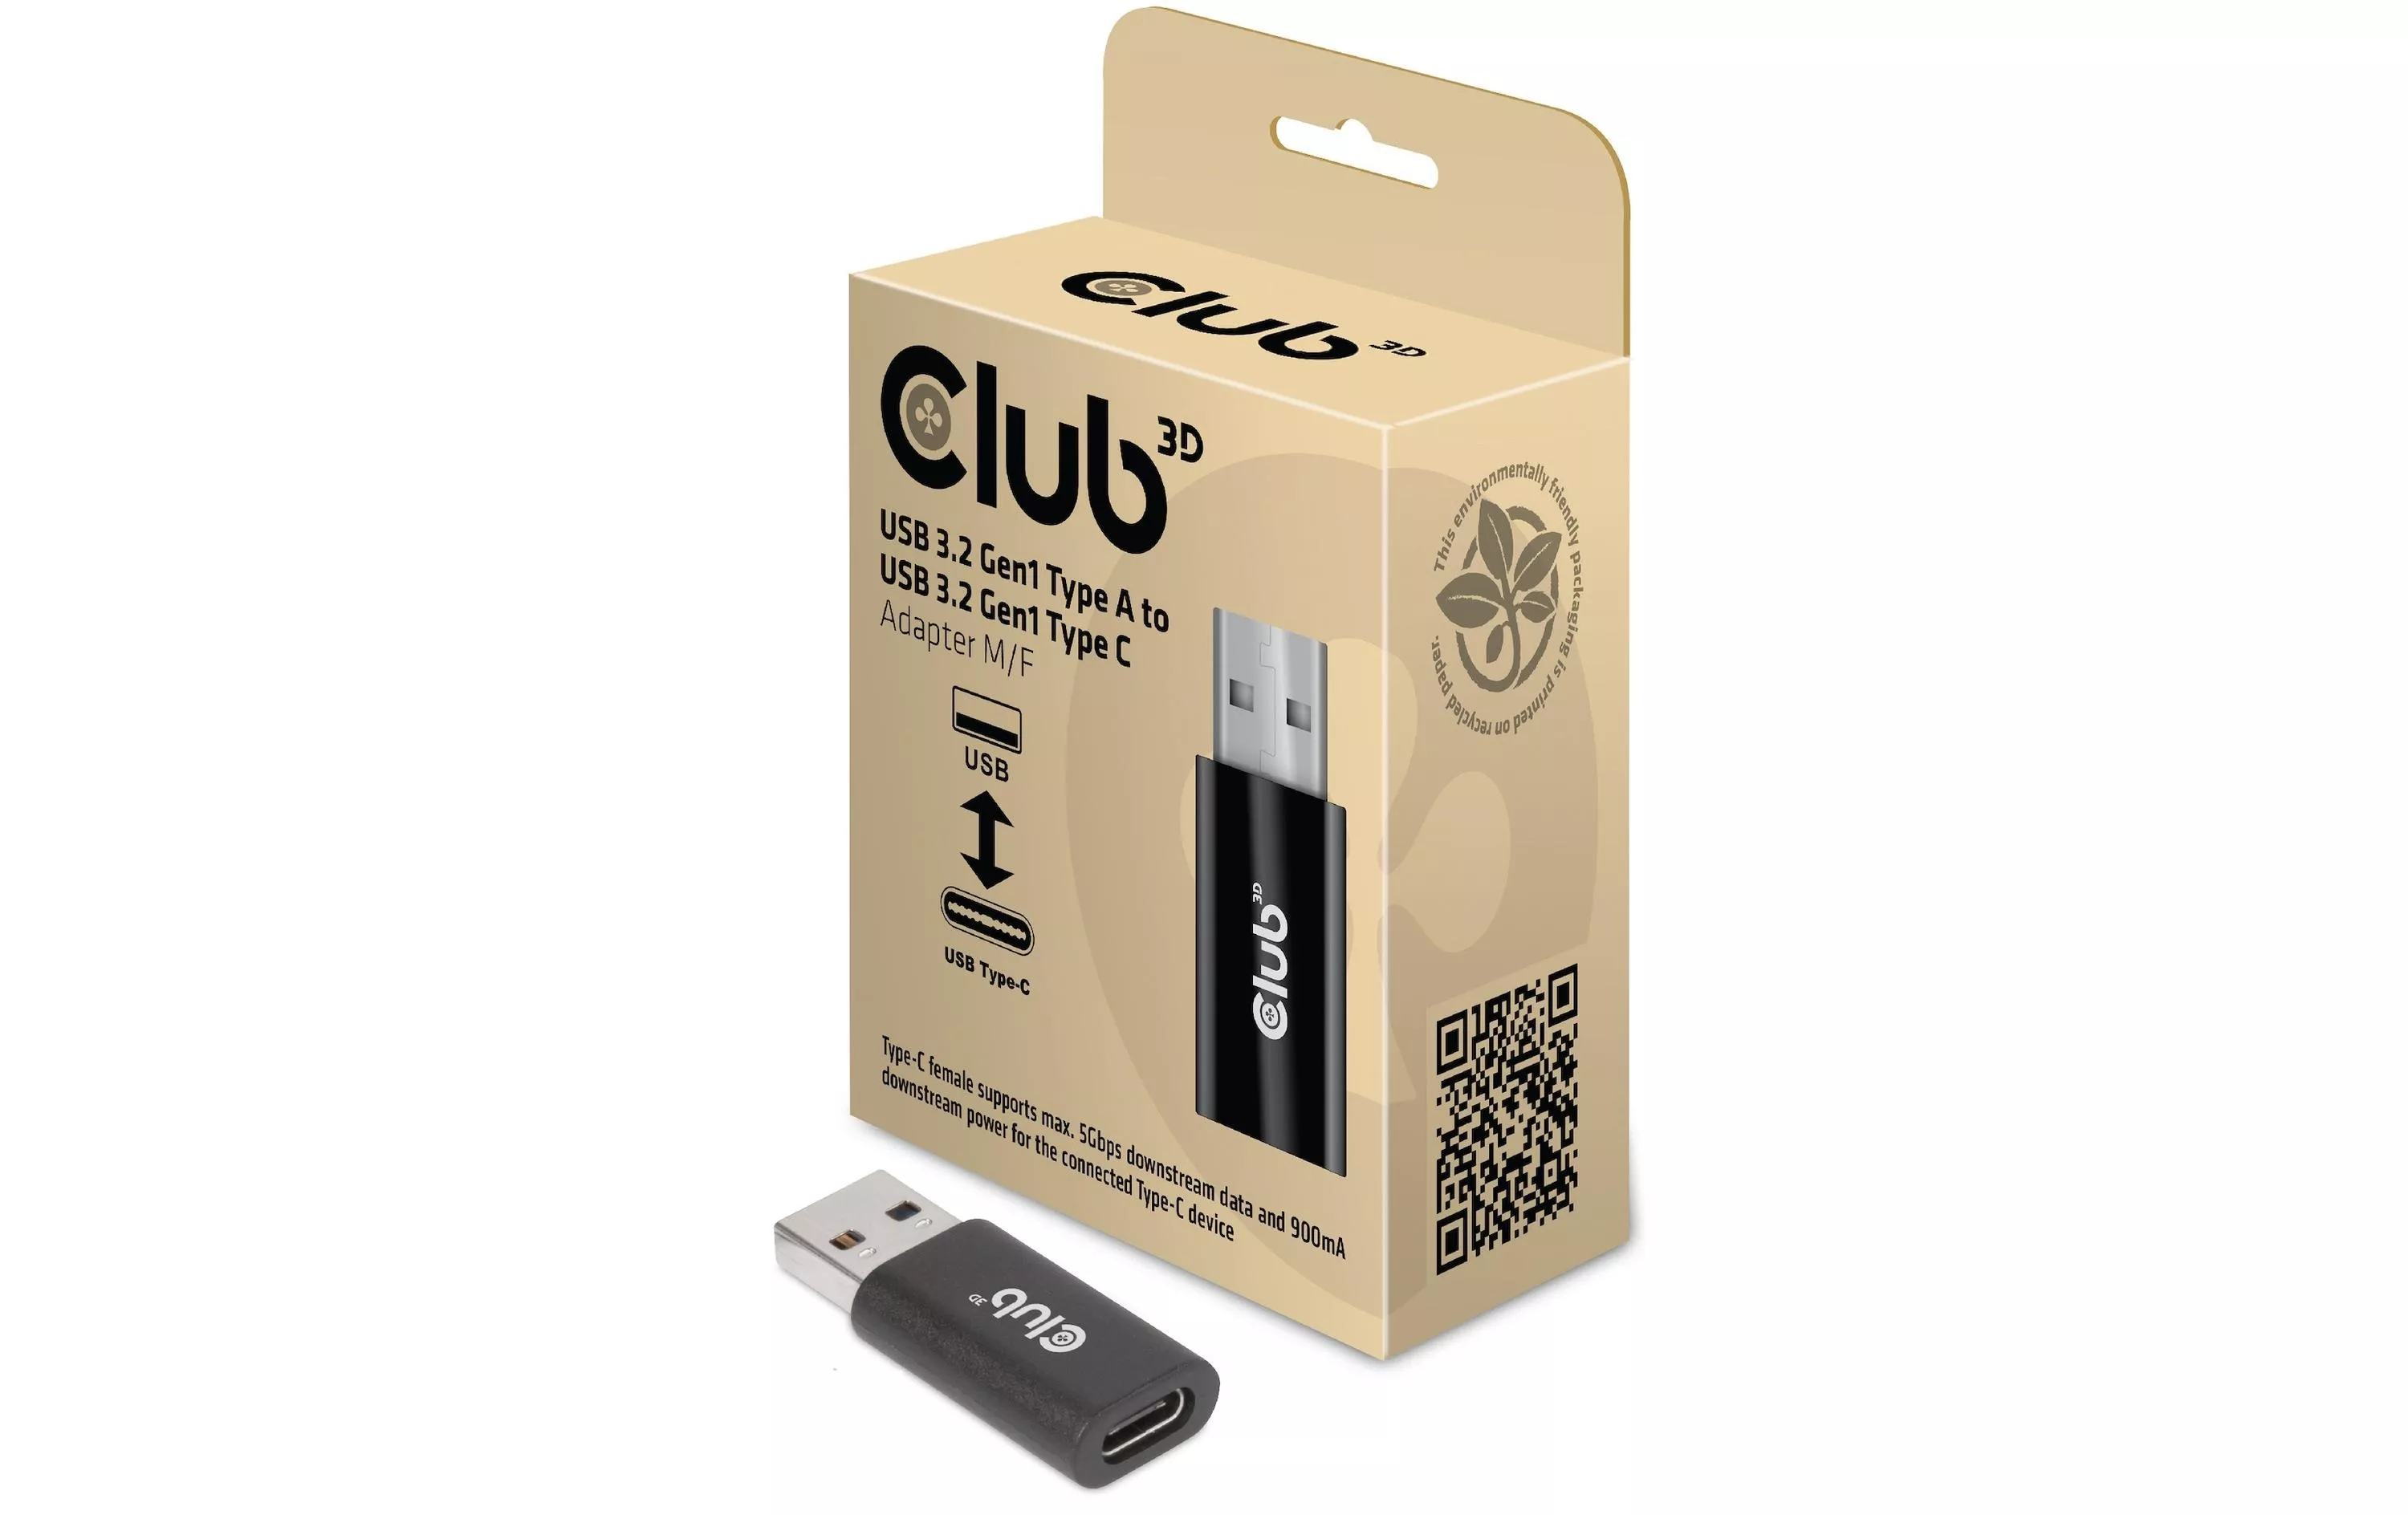 Adattatore USB Club 3D CAC-1525 Spina USB-A - Presa USB-C